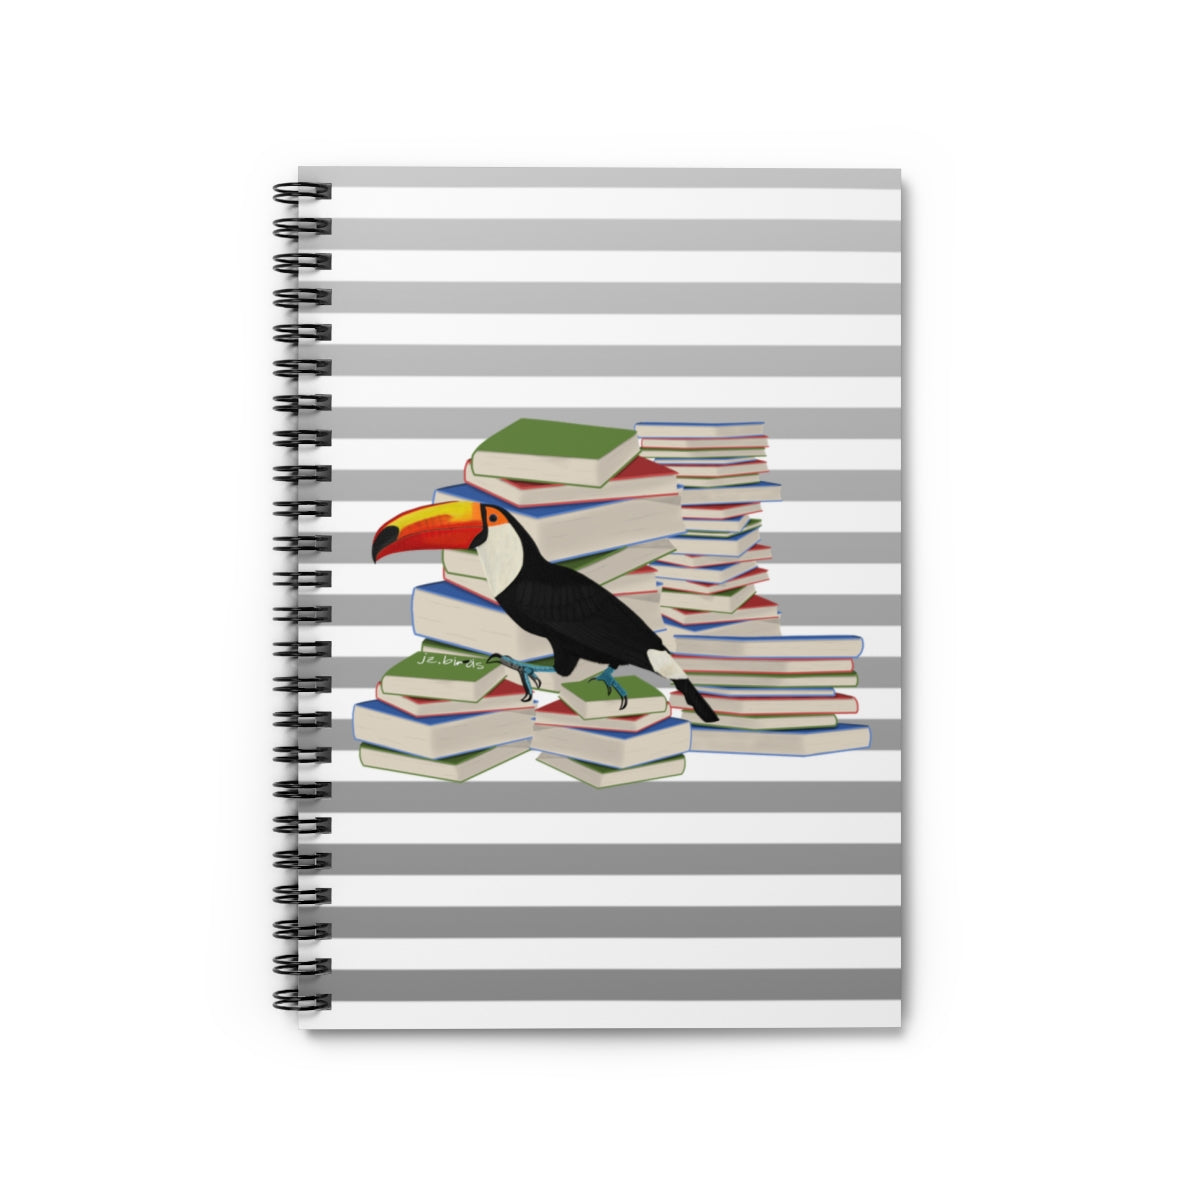 bird art notebooks and journals